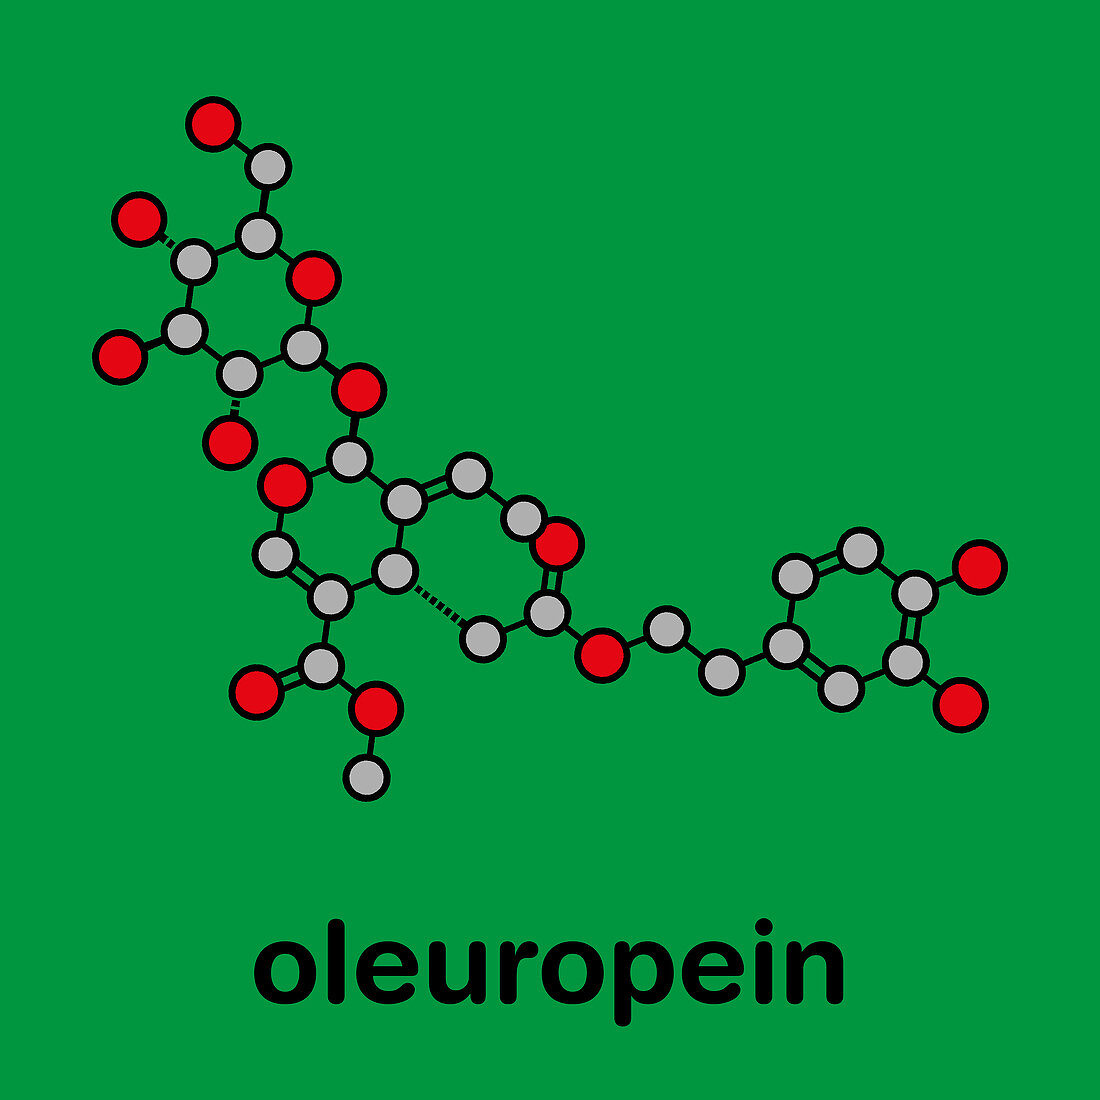 Oleuropein olive component molecule, illustration